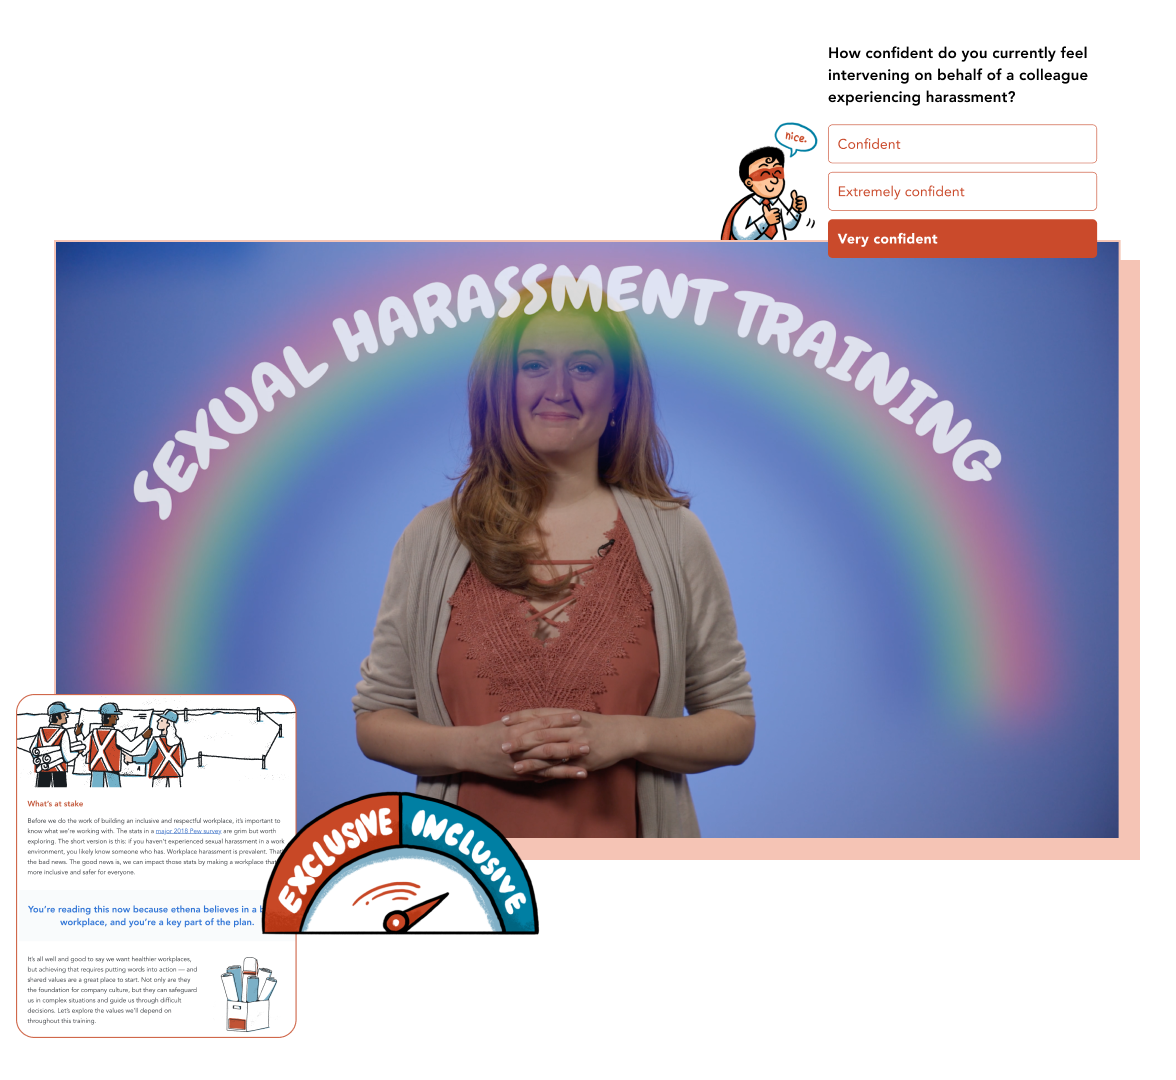 Harassment Prevention Training